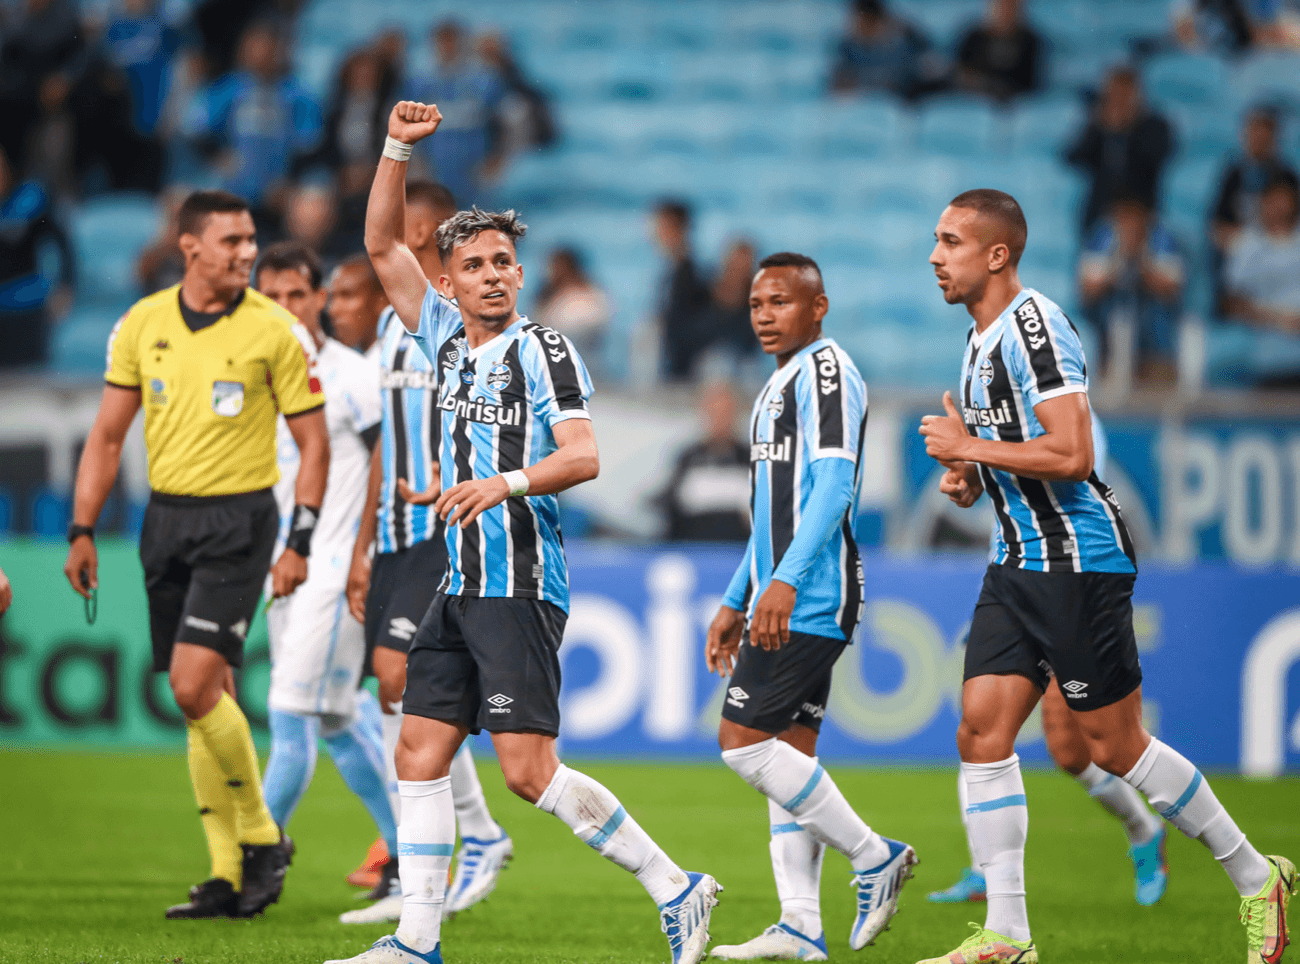 Grêmio 1 x 0 Londrina – Econômico, Tricolor chega a 9 jogos de invencibilidade na Série B